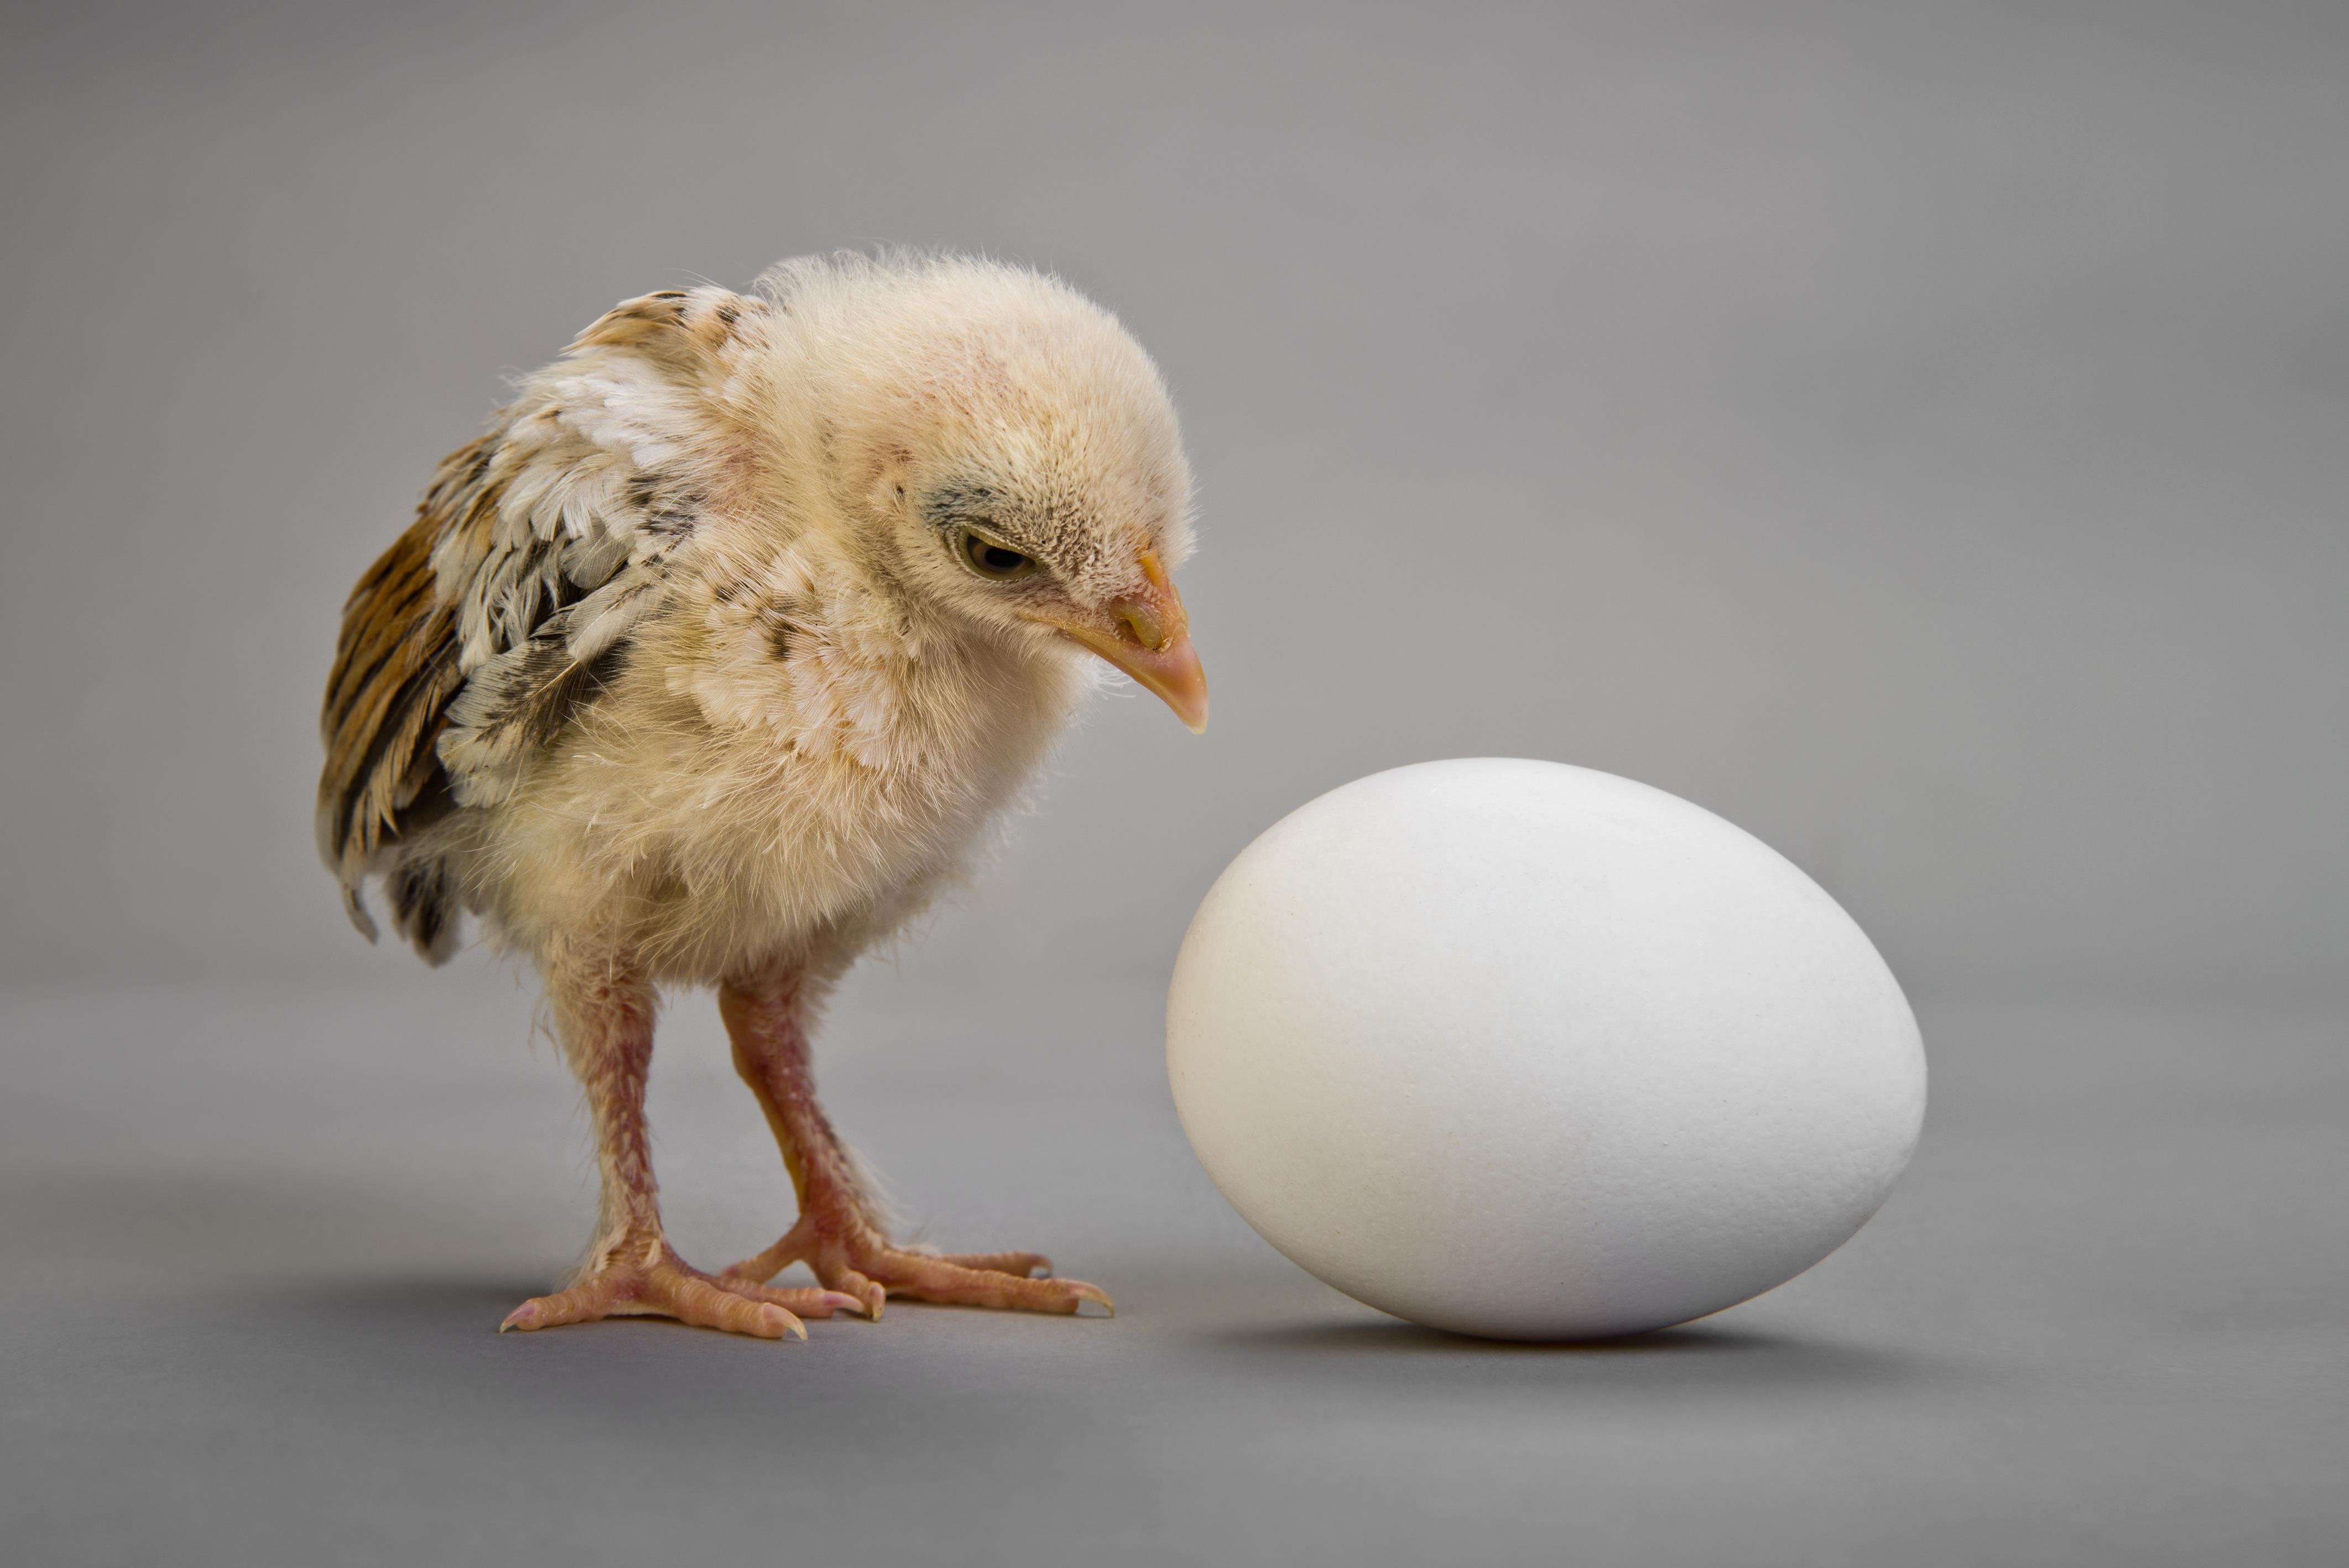 Co było pierwsze, jajko czy kura? To proste! - Wiedza - Newsweek.pl